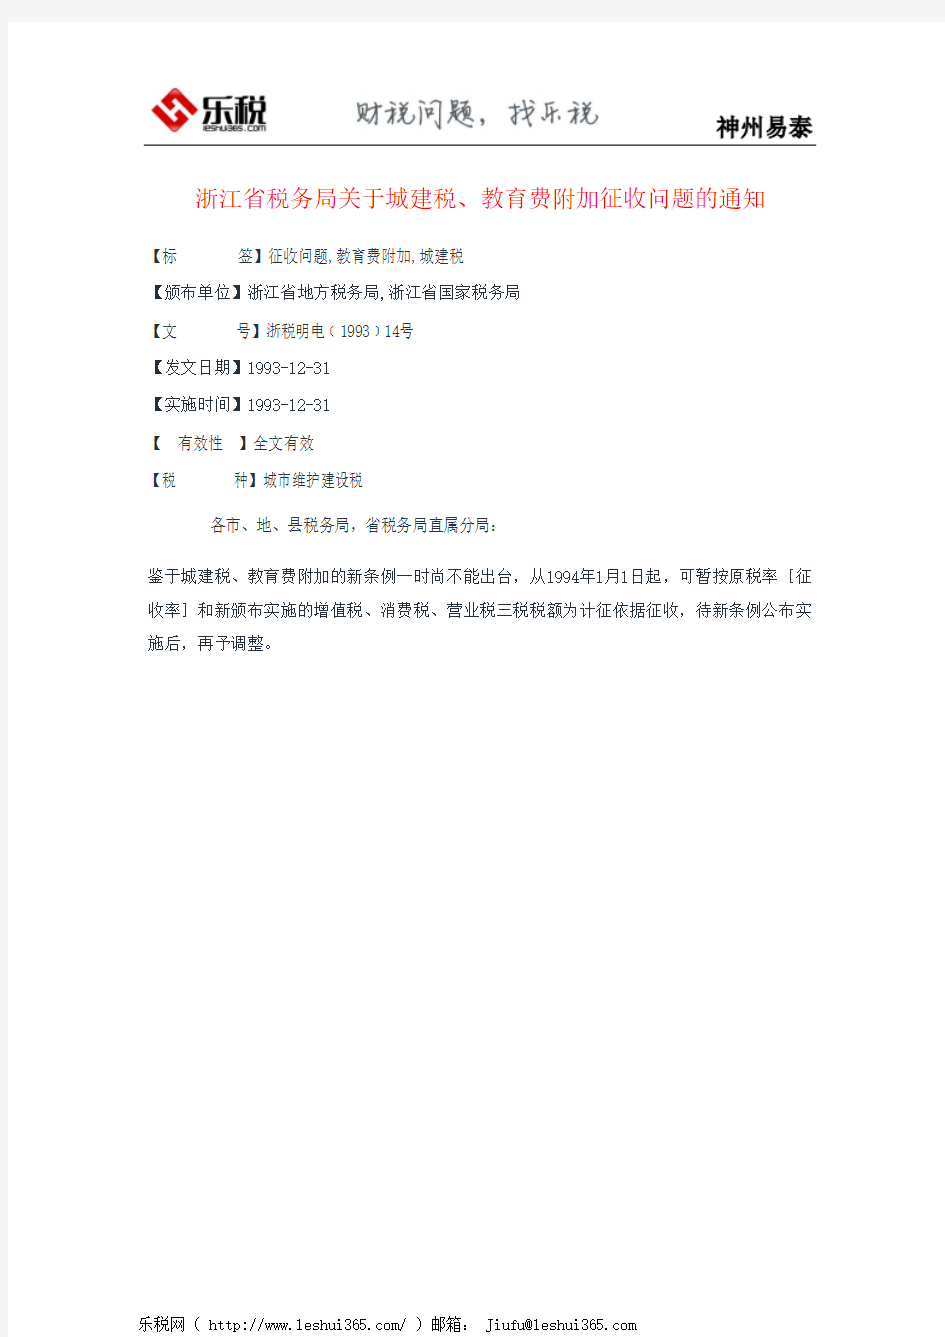 浙江省税务局关于城建税、教育费附加征收问题的通知